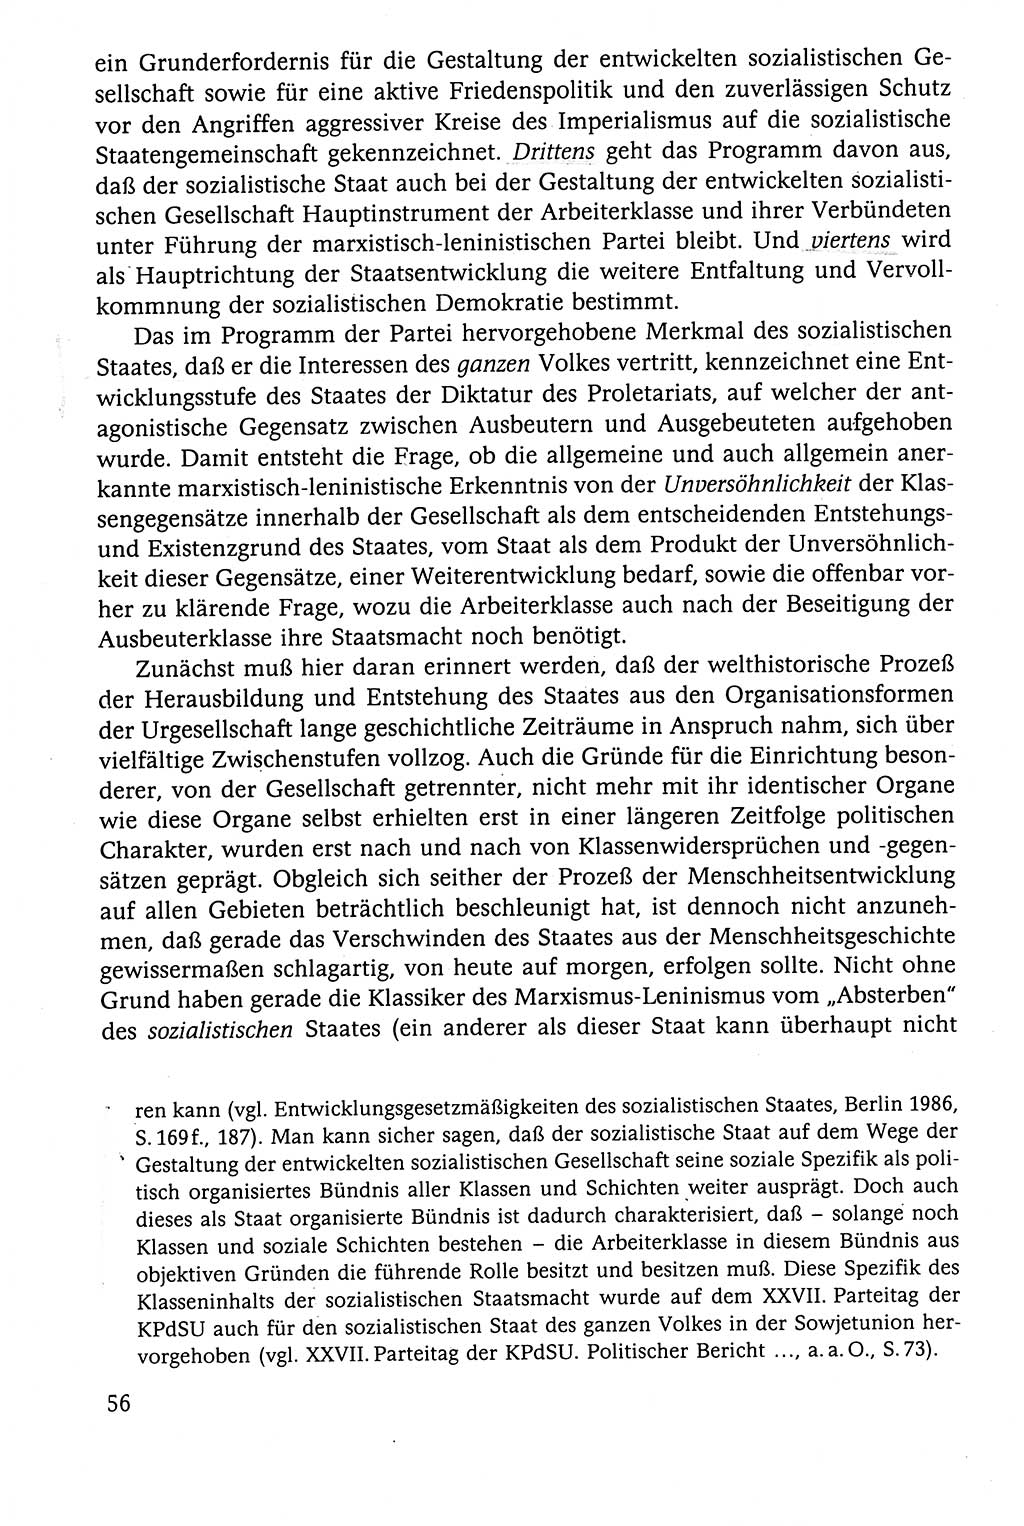 Der Staat im politischen System der DDR (Deutsche Demokratische Republik) 1986, Seite 56 (St. pol. Sys. DDR 1986, S. 56)